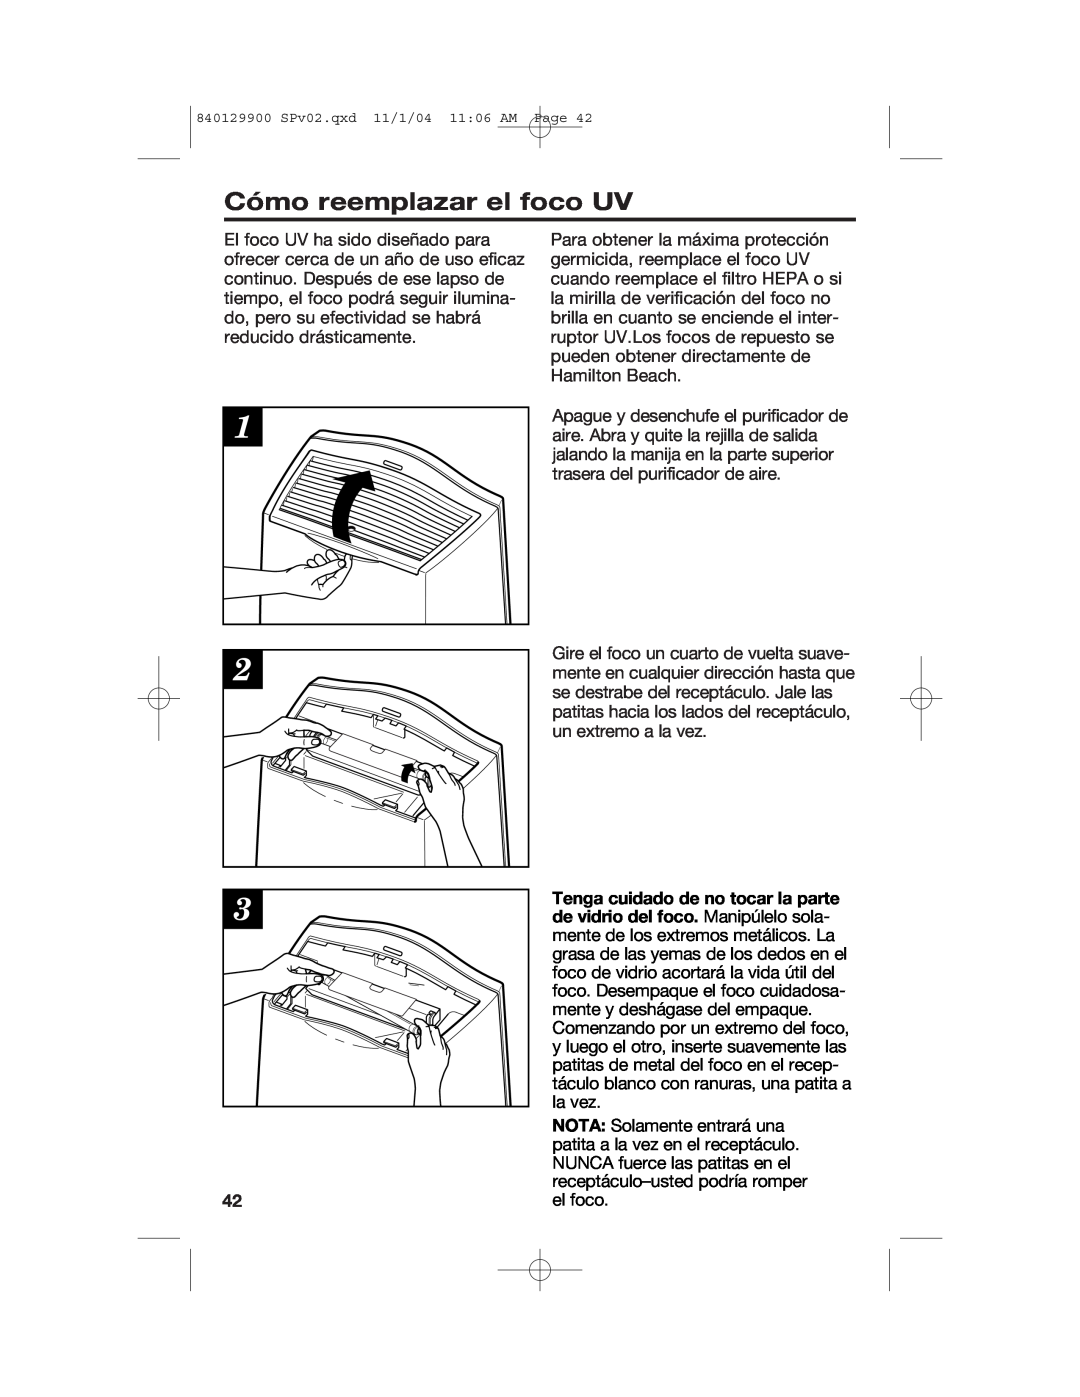 Hamilton Beach 04162, 04160, 04161 manual Cómo reemplazar el foco UV 